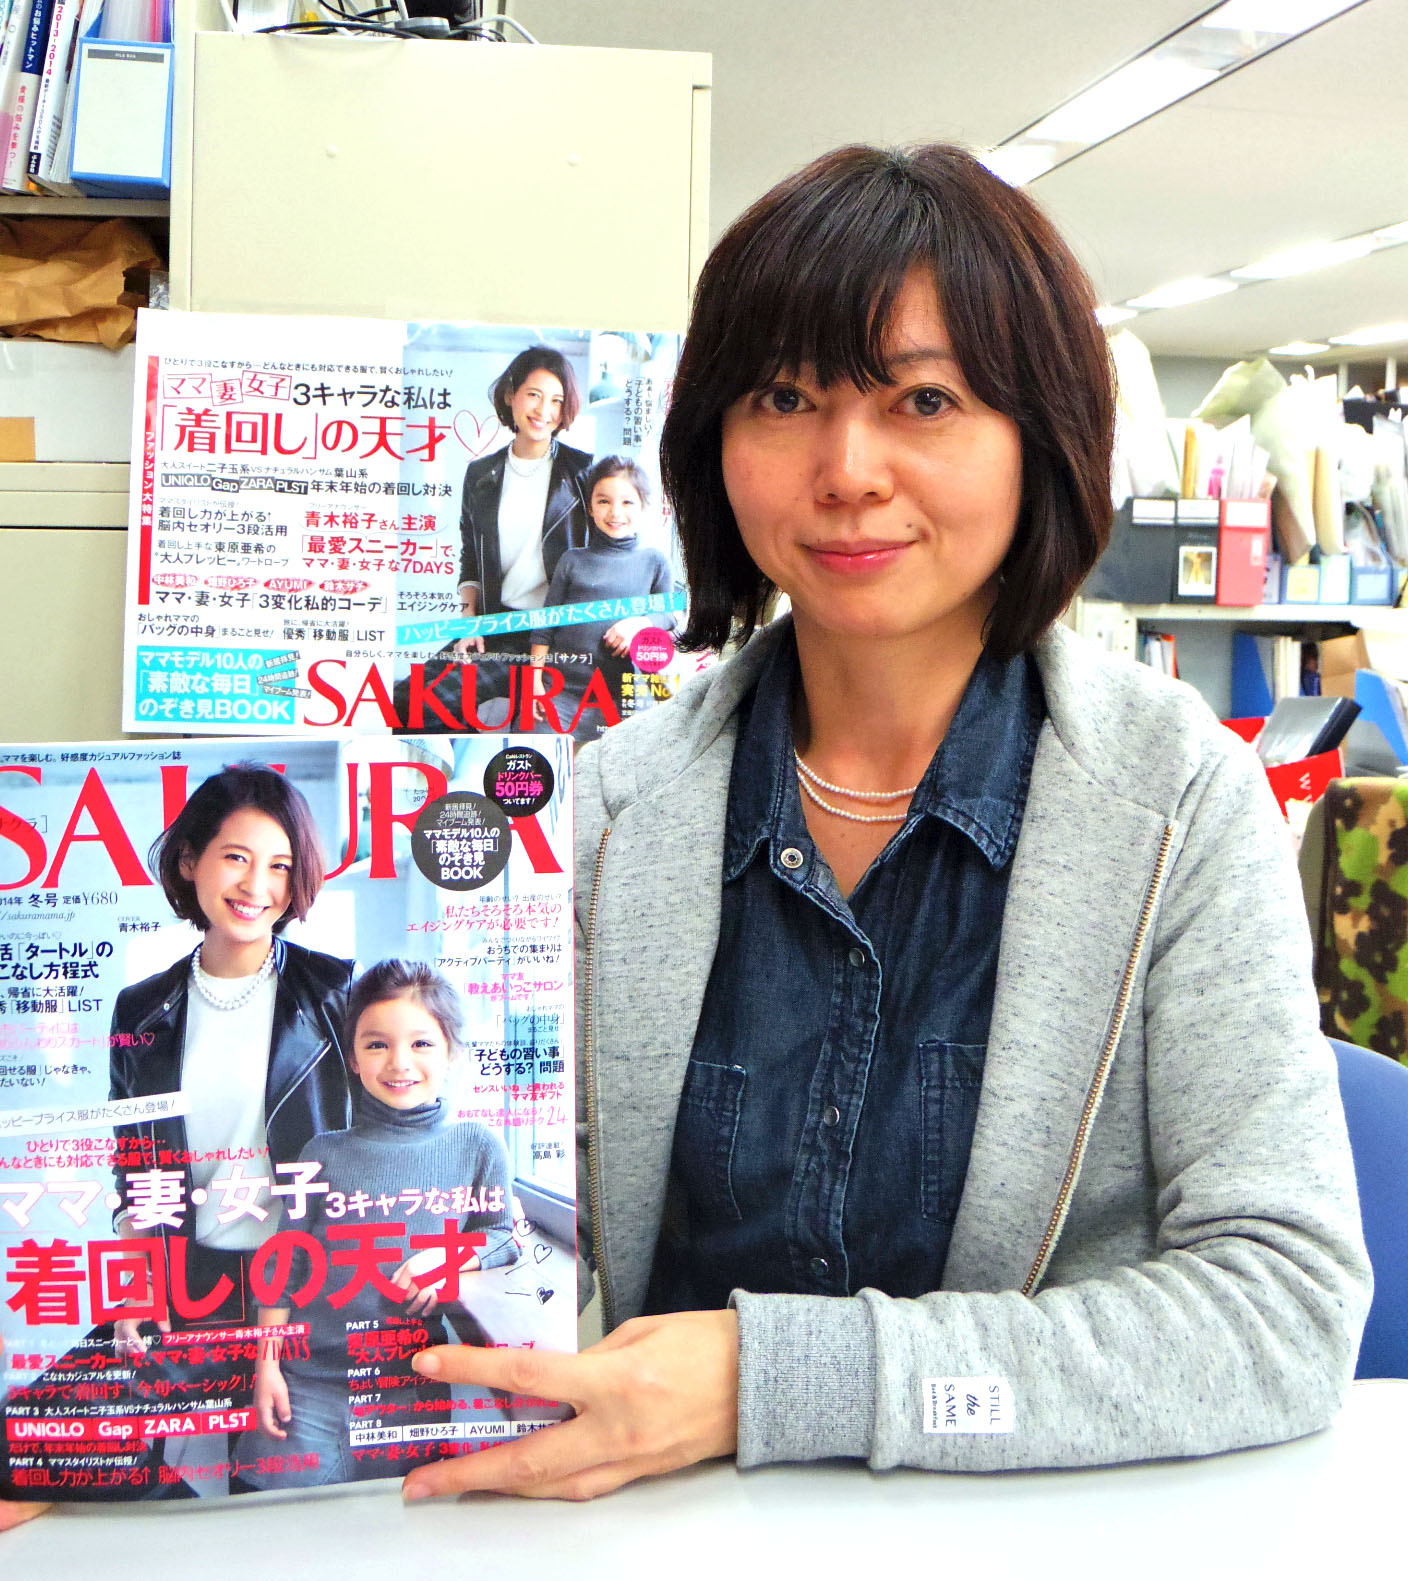 価値観激変 Sakura編集長が見た ママ読者の新トレンド Cancam Jp キャンキャン